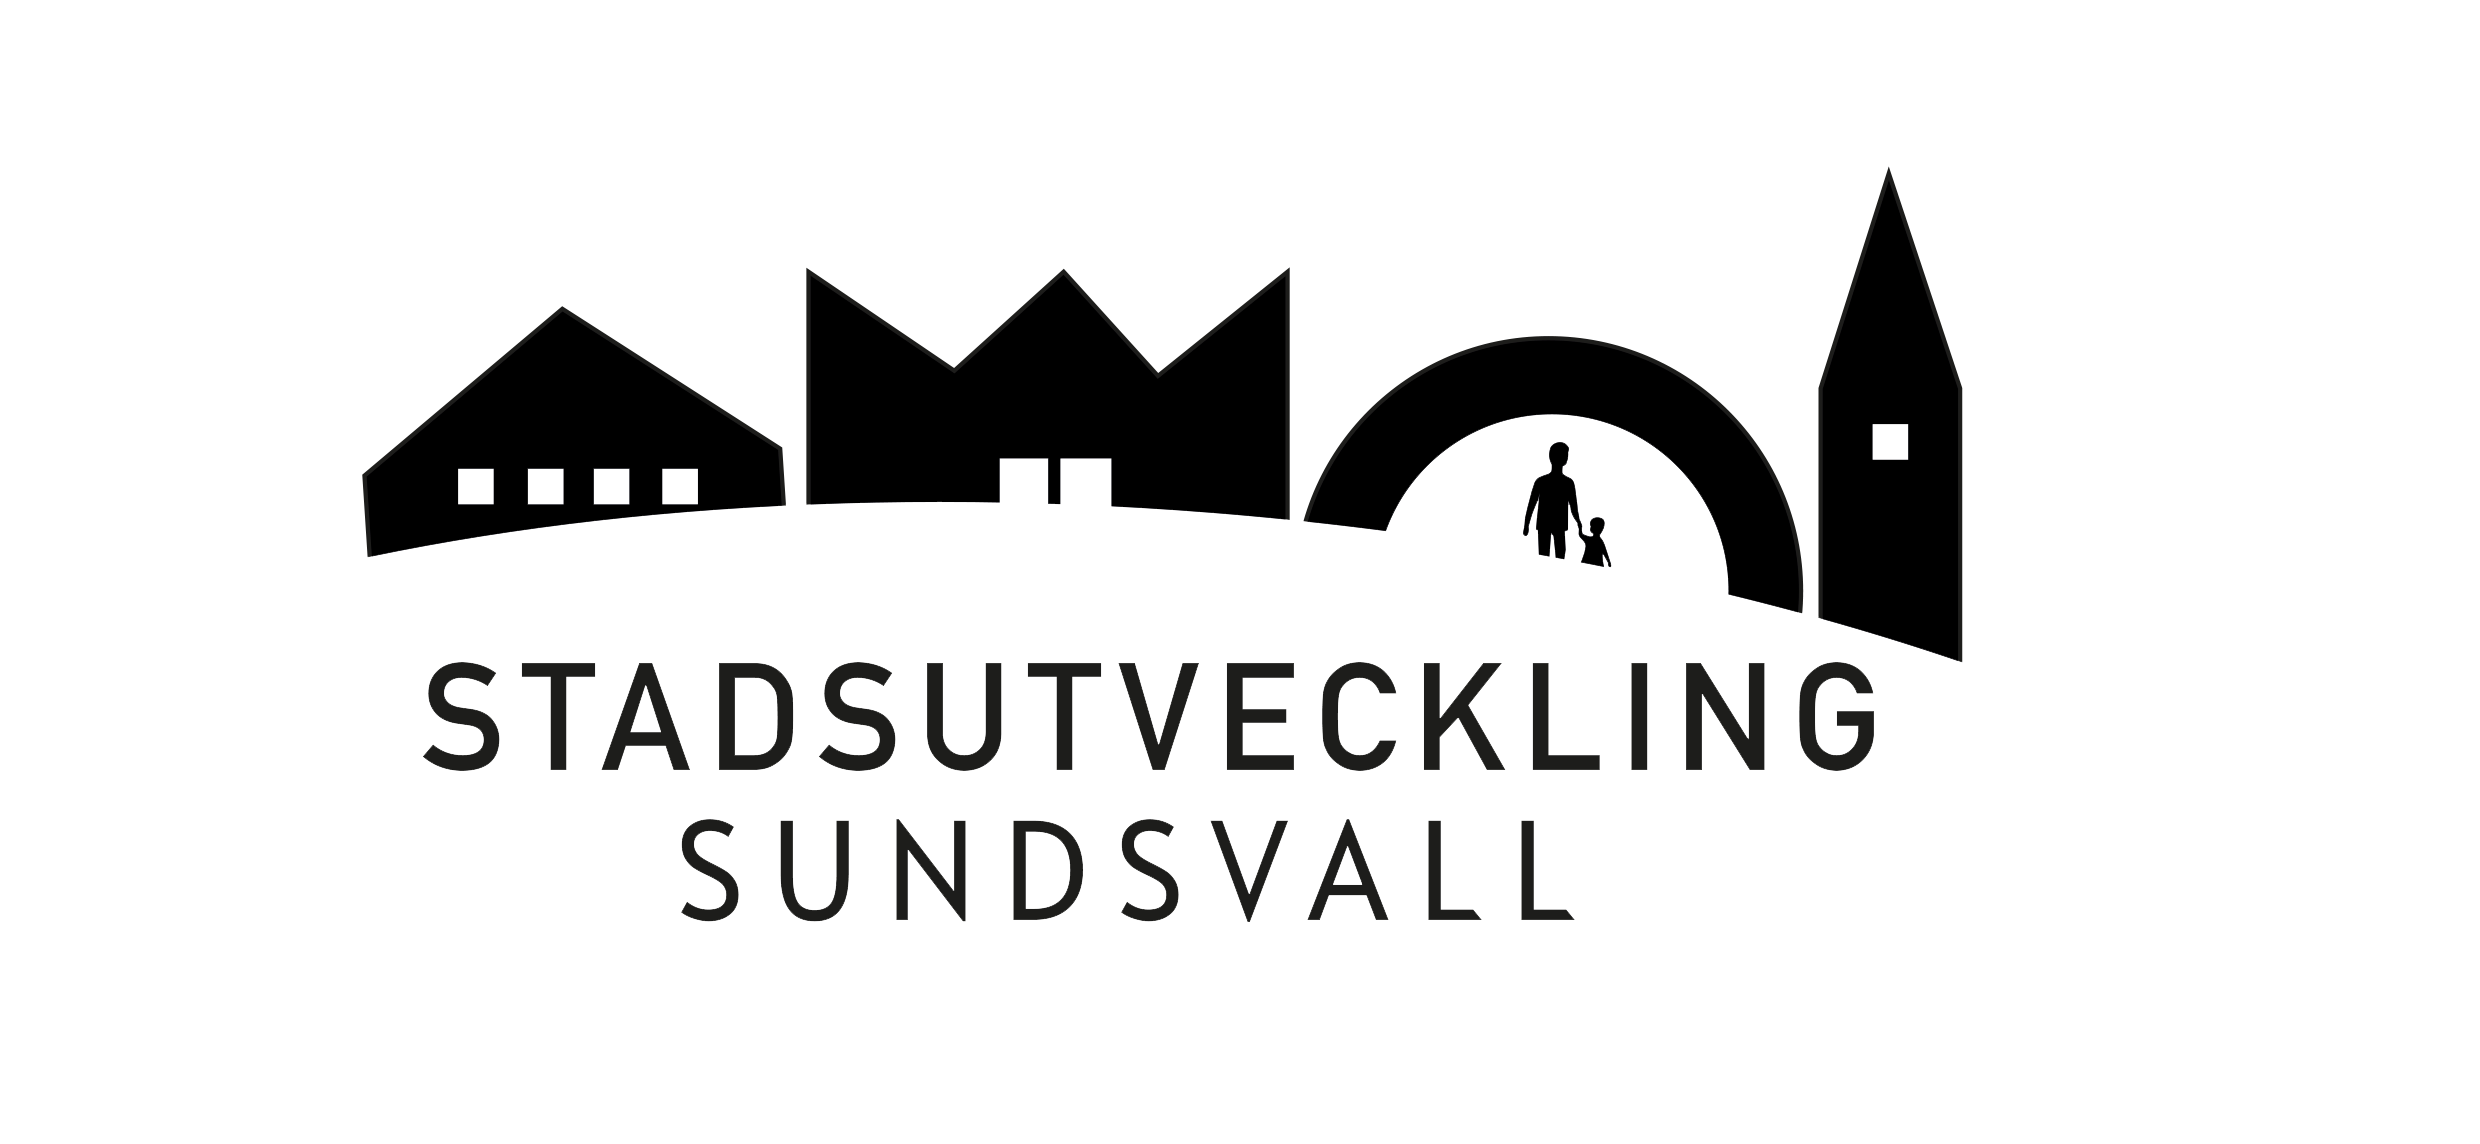 Sponsor: Stadsutveckling Sundsvall